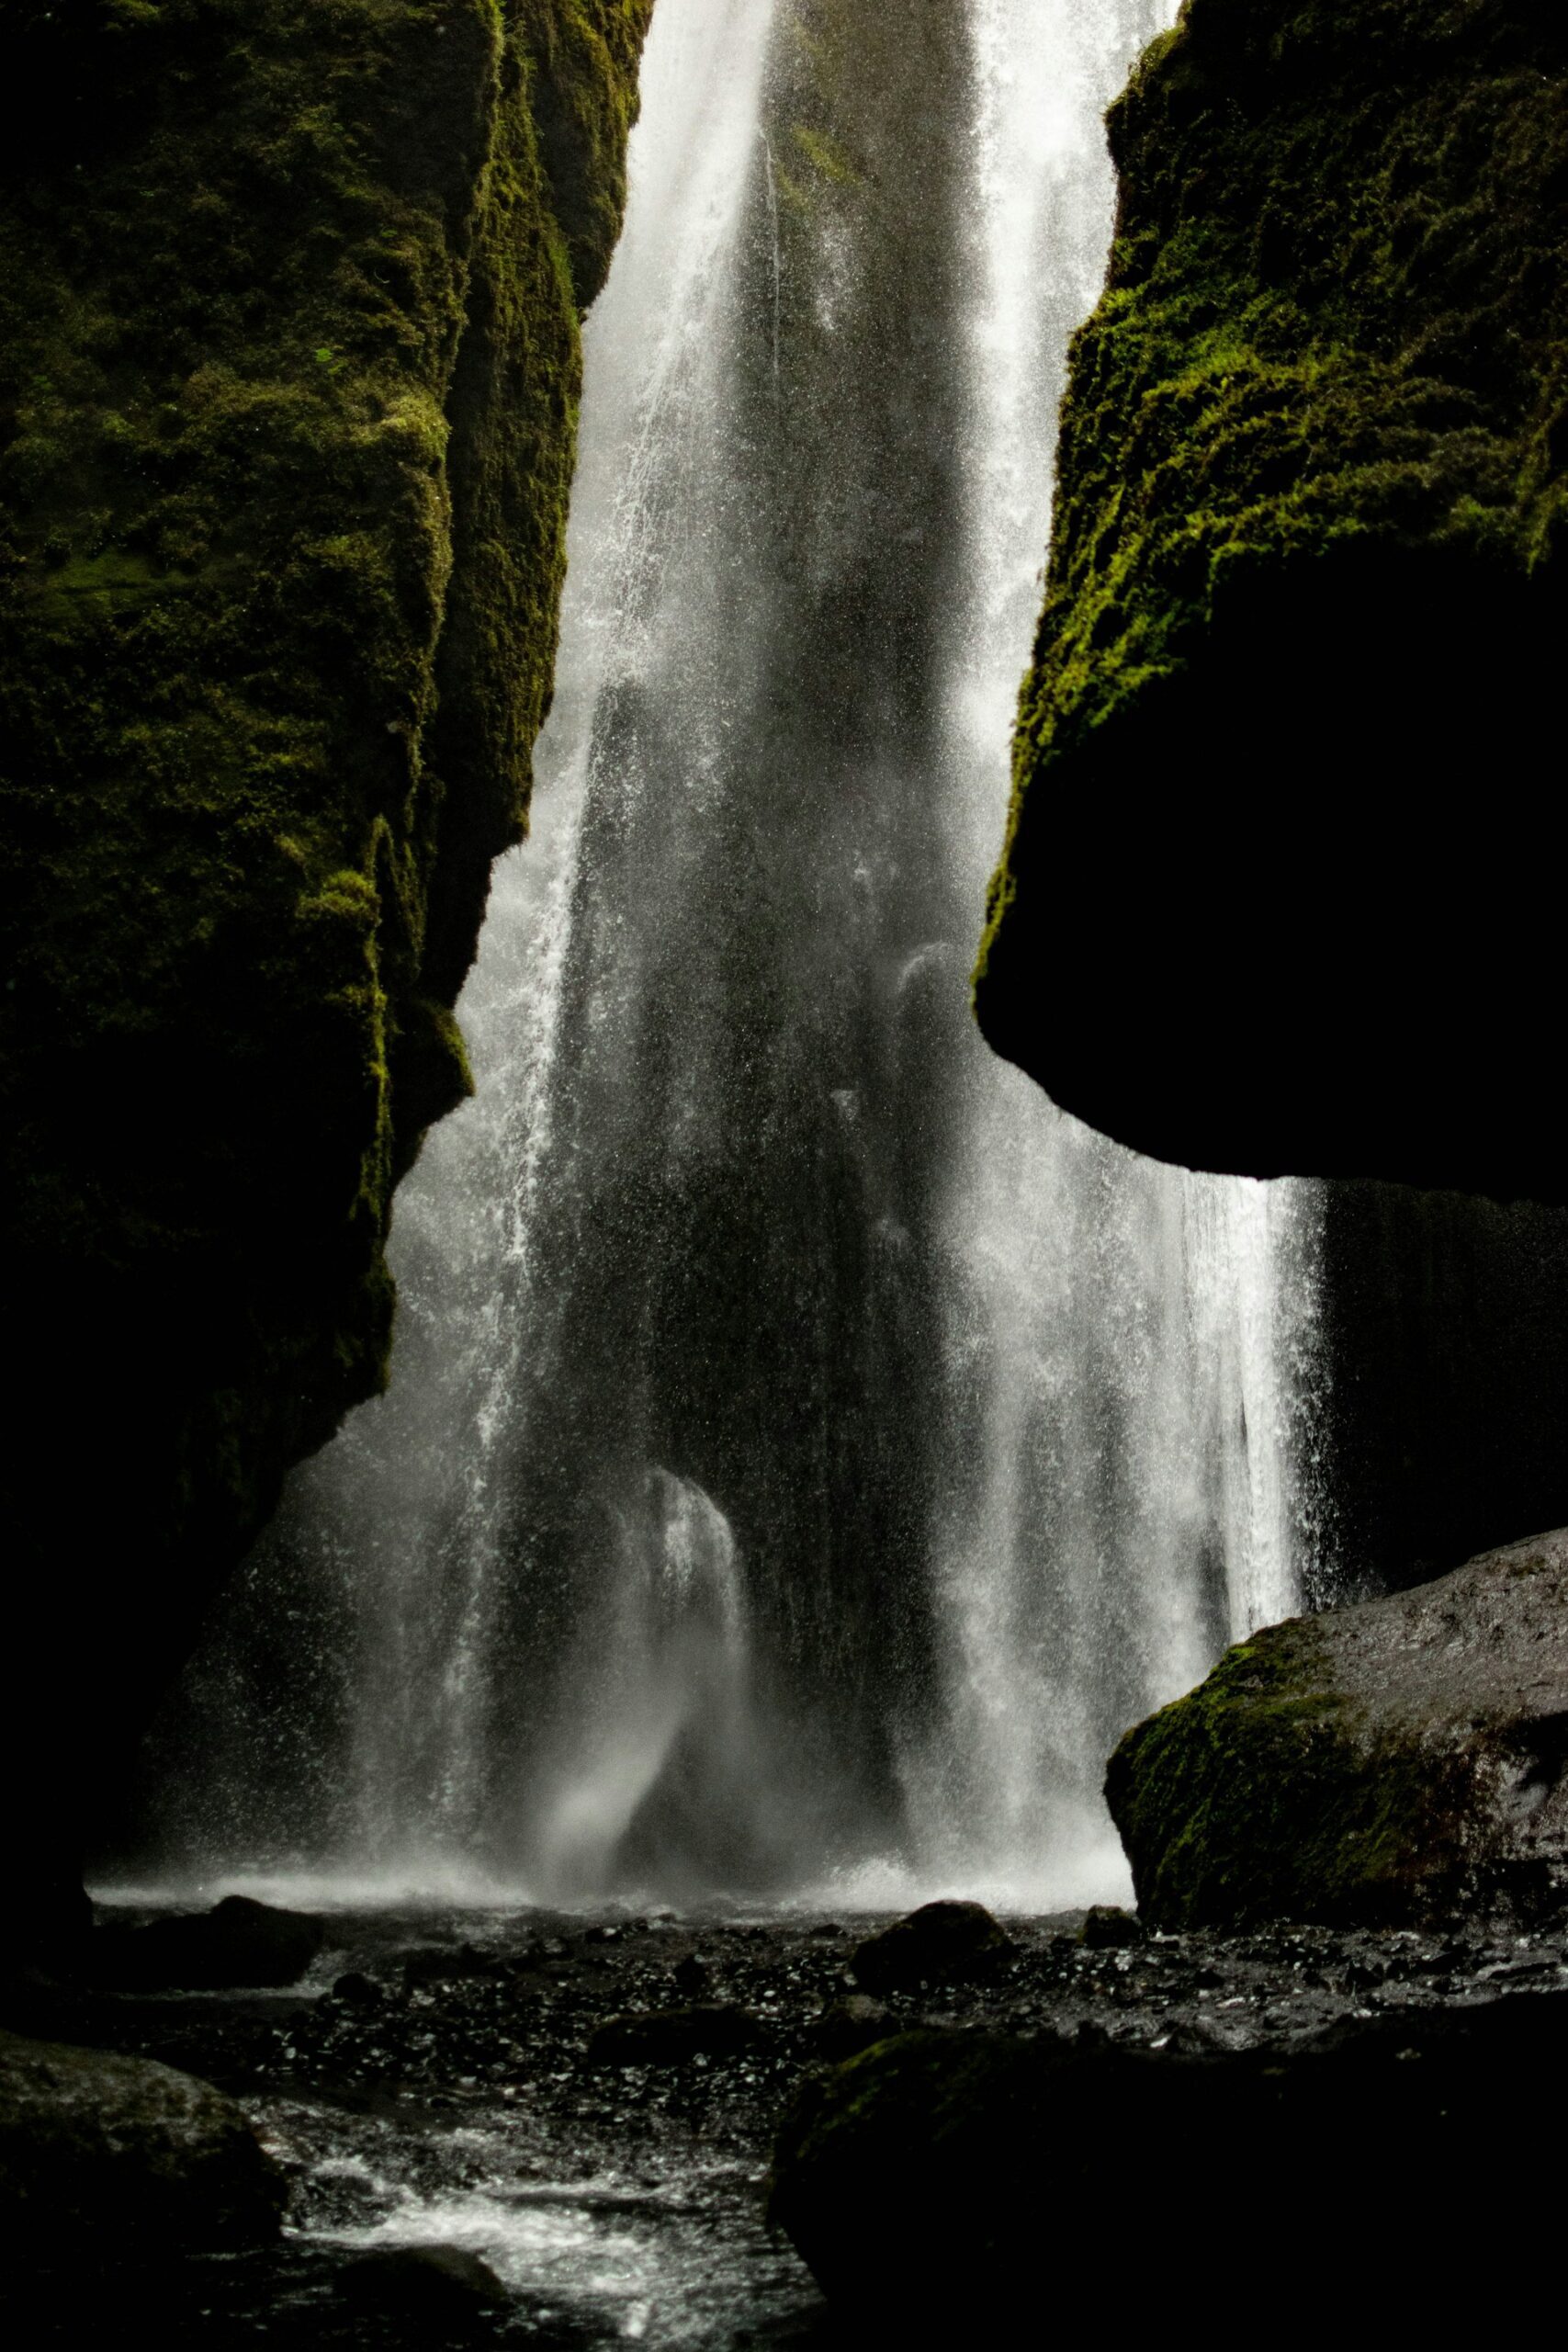 Gljufrabui waterfall 